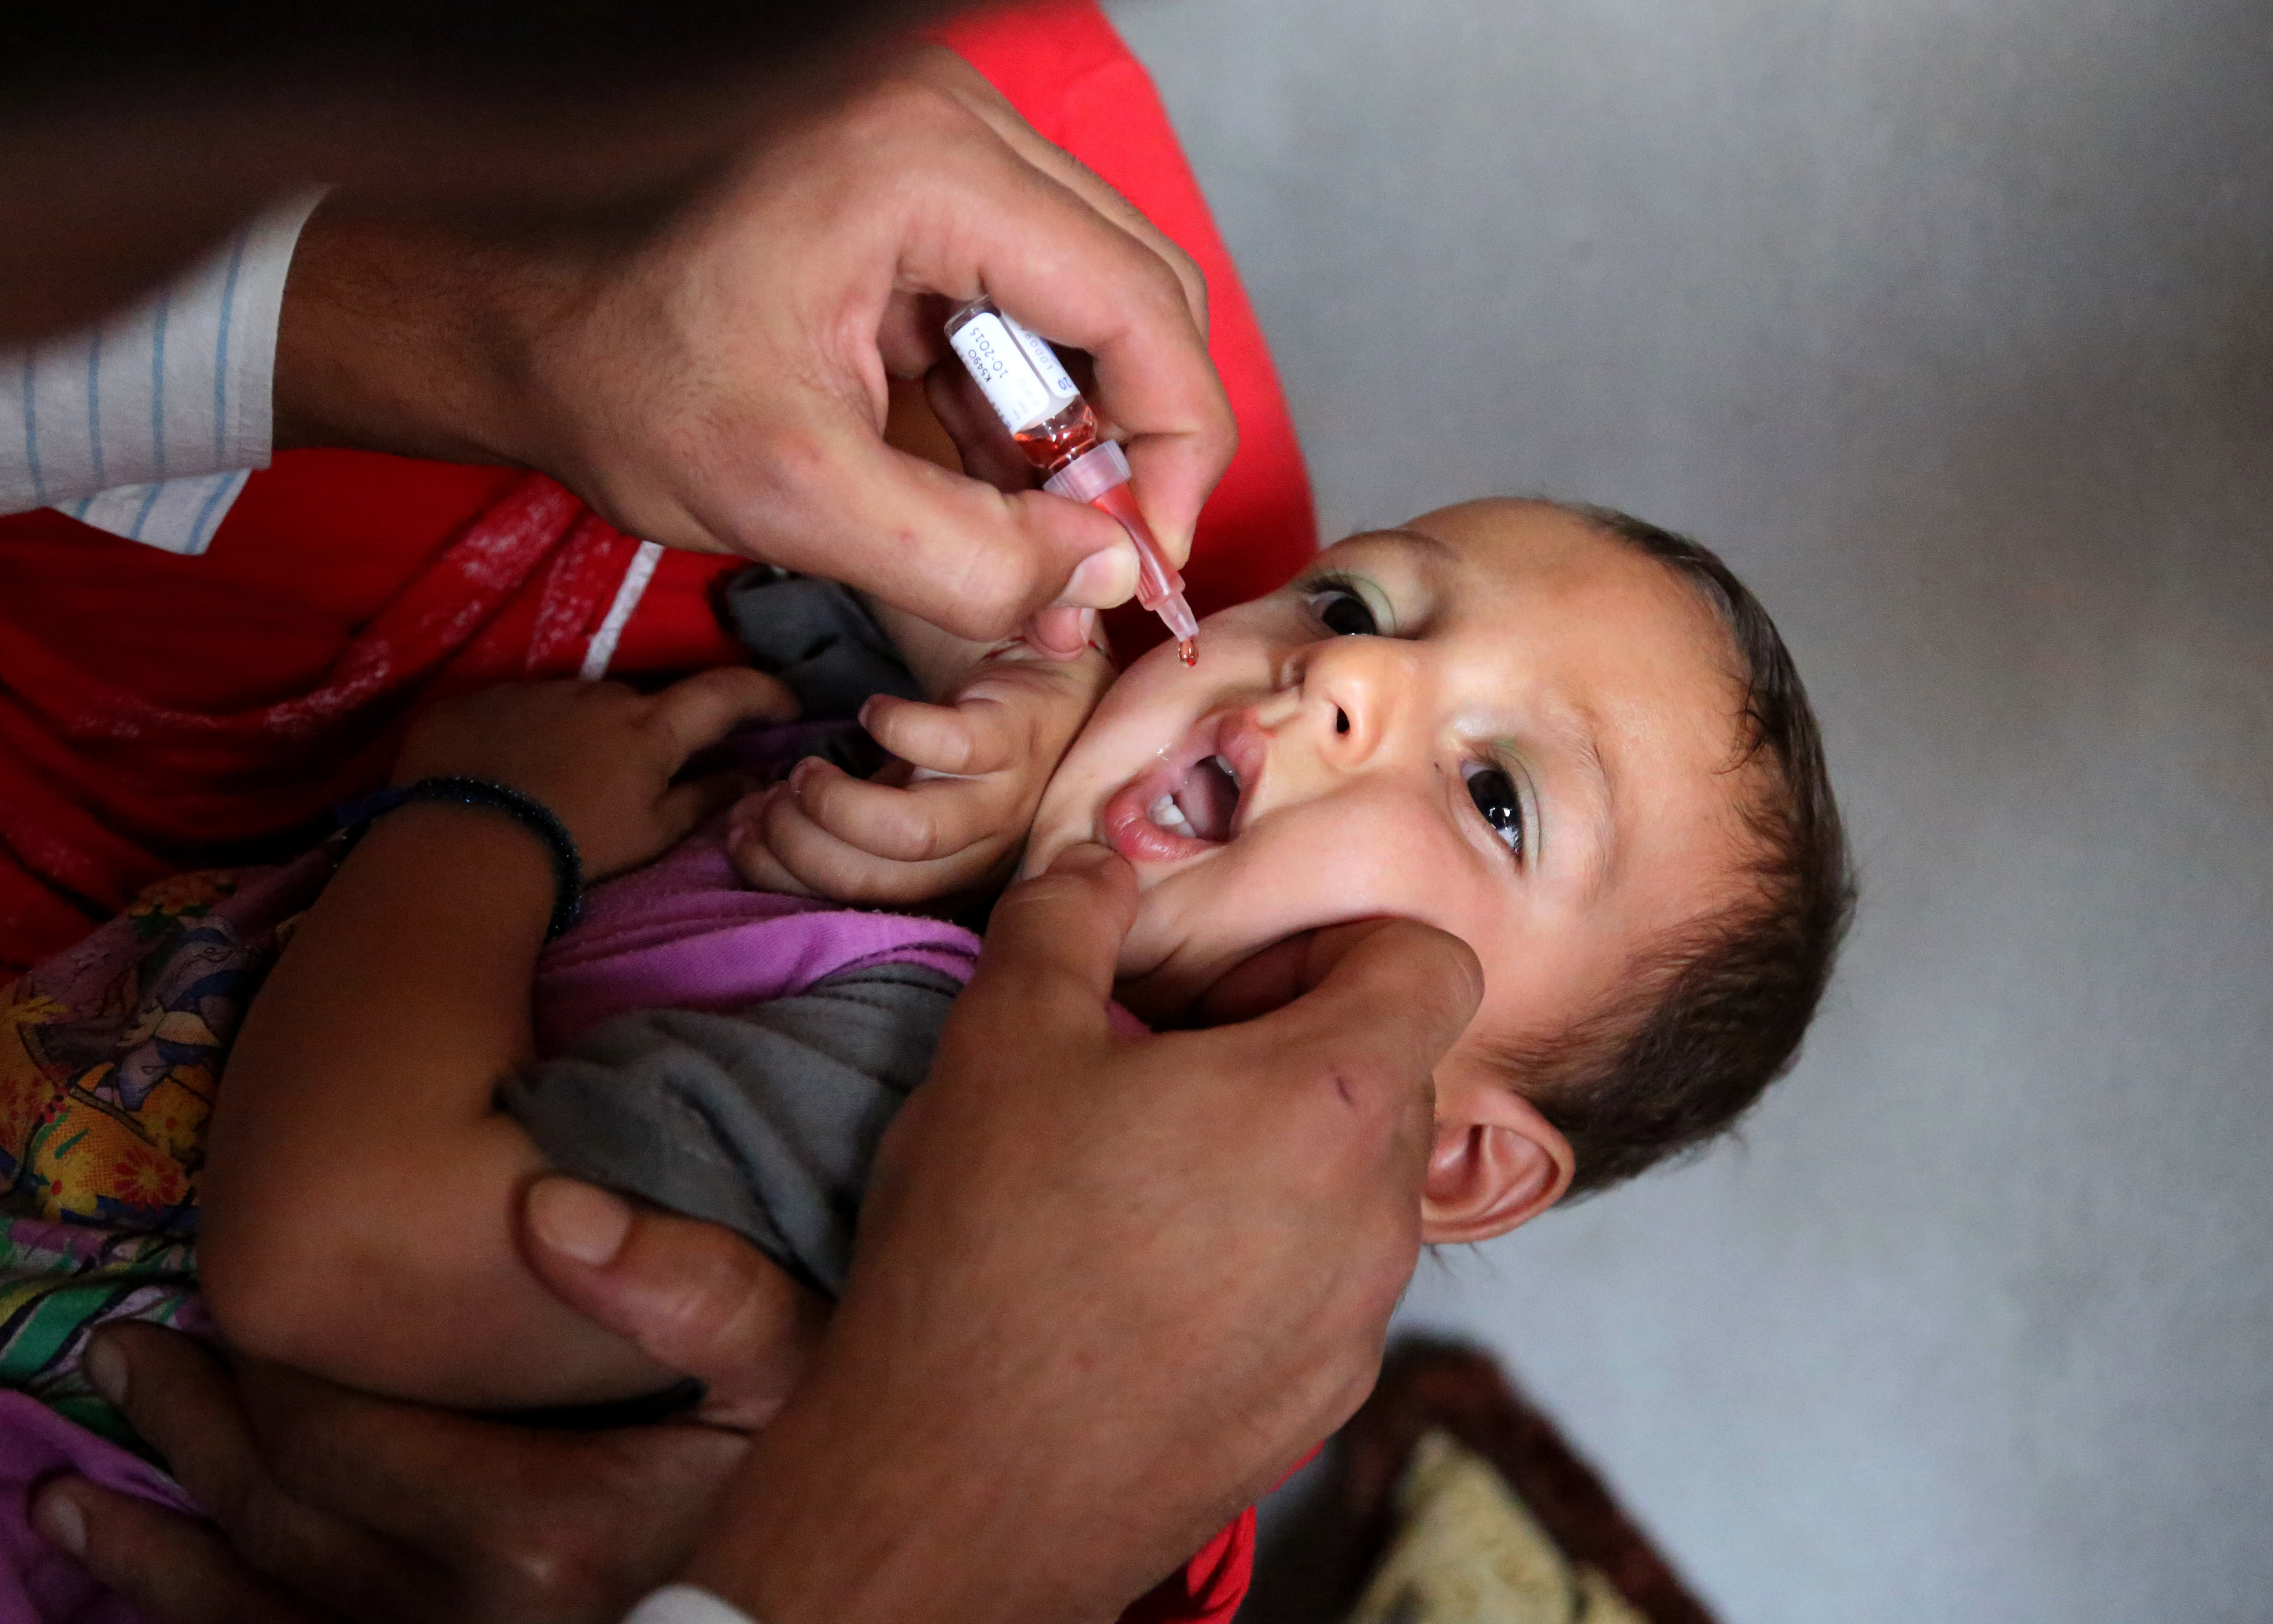 Eκστρατεία κατά της πολιομυελίτιδας στο Ιράκ από τη UNICEF και τον ΠΟΥ